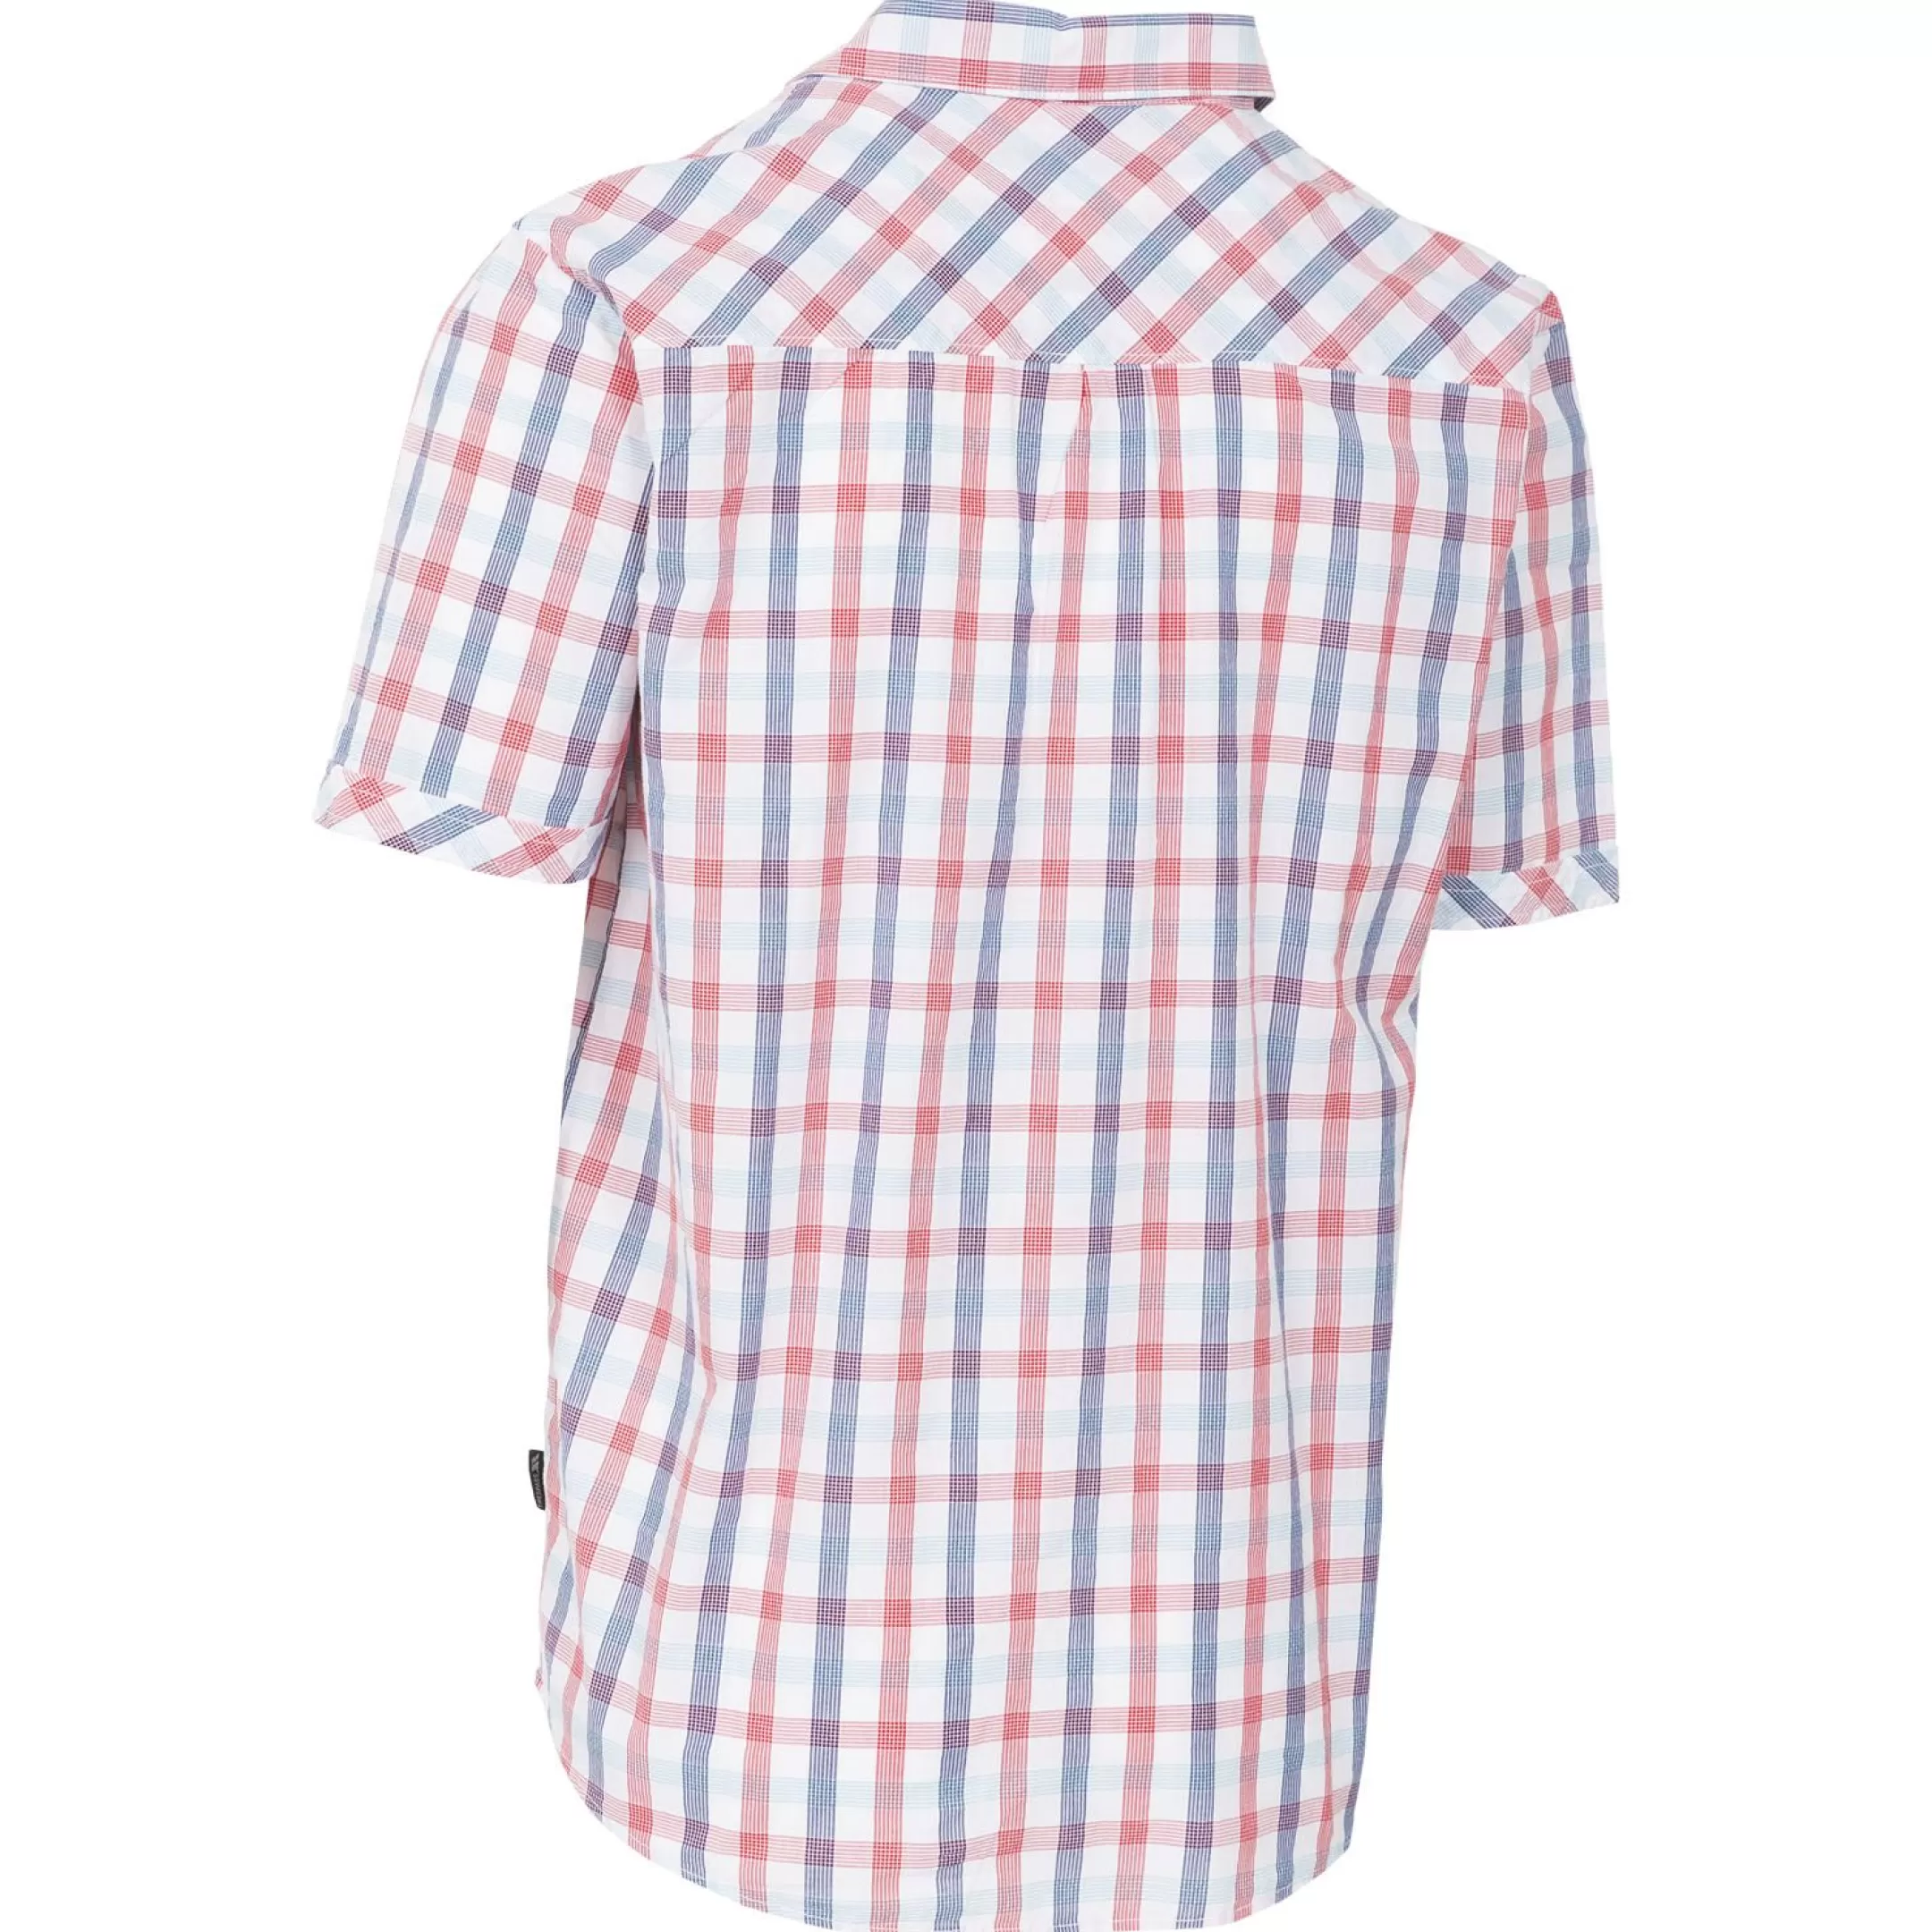 Men's Short Sleeve Checked Shirt Hopedale | Trespass Hot